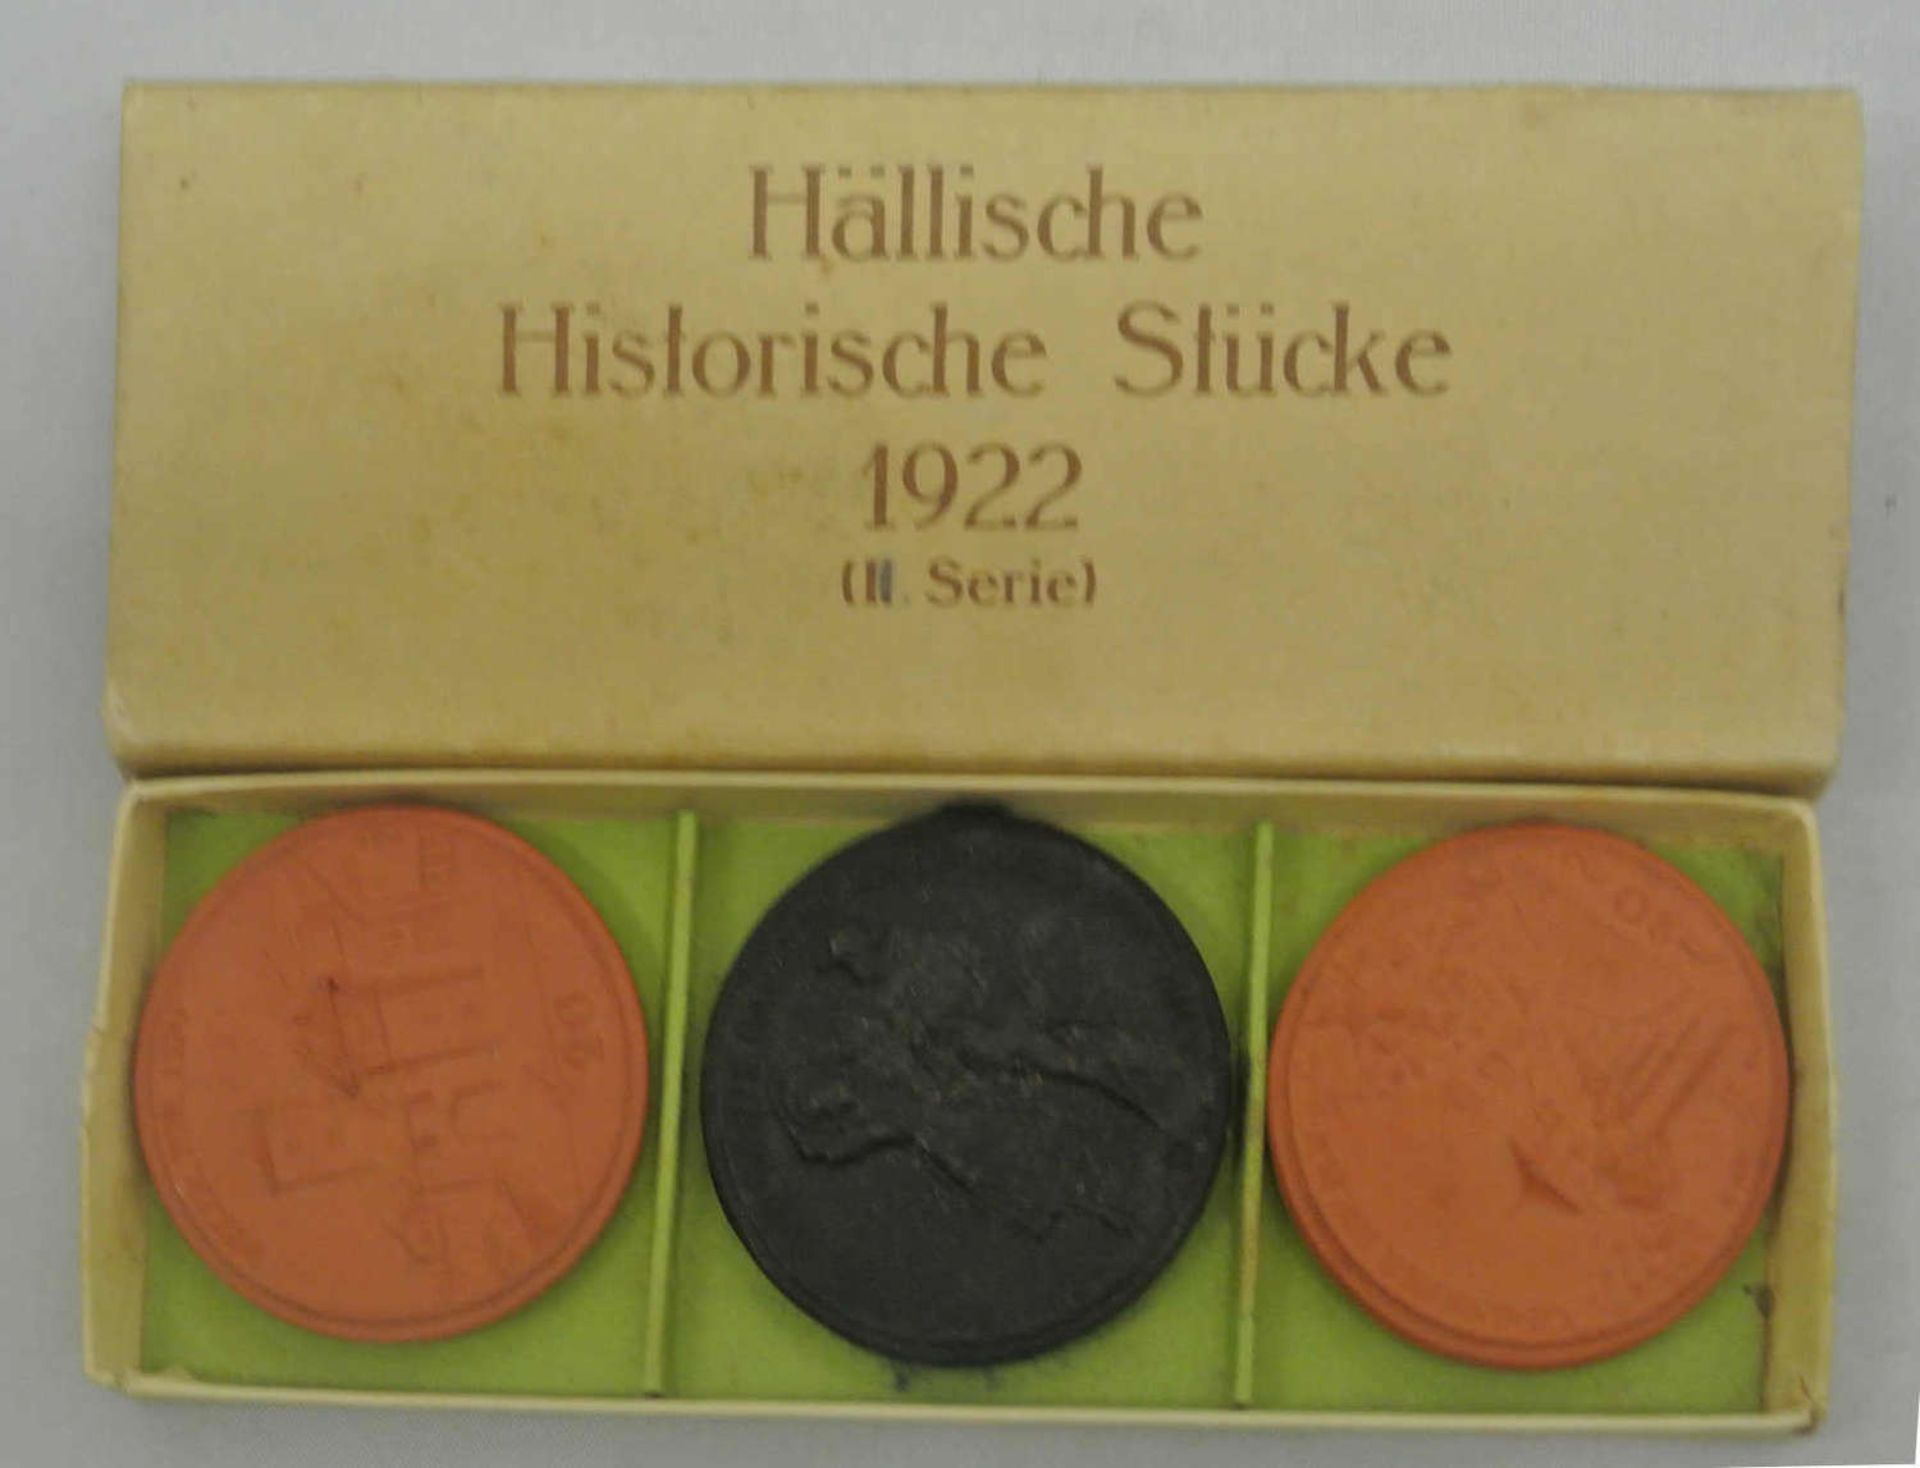 3 Porzellanmedaillen, 2. Serie, 1922, Schwäbisch Hall, Hällische Historische Stücke mit